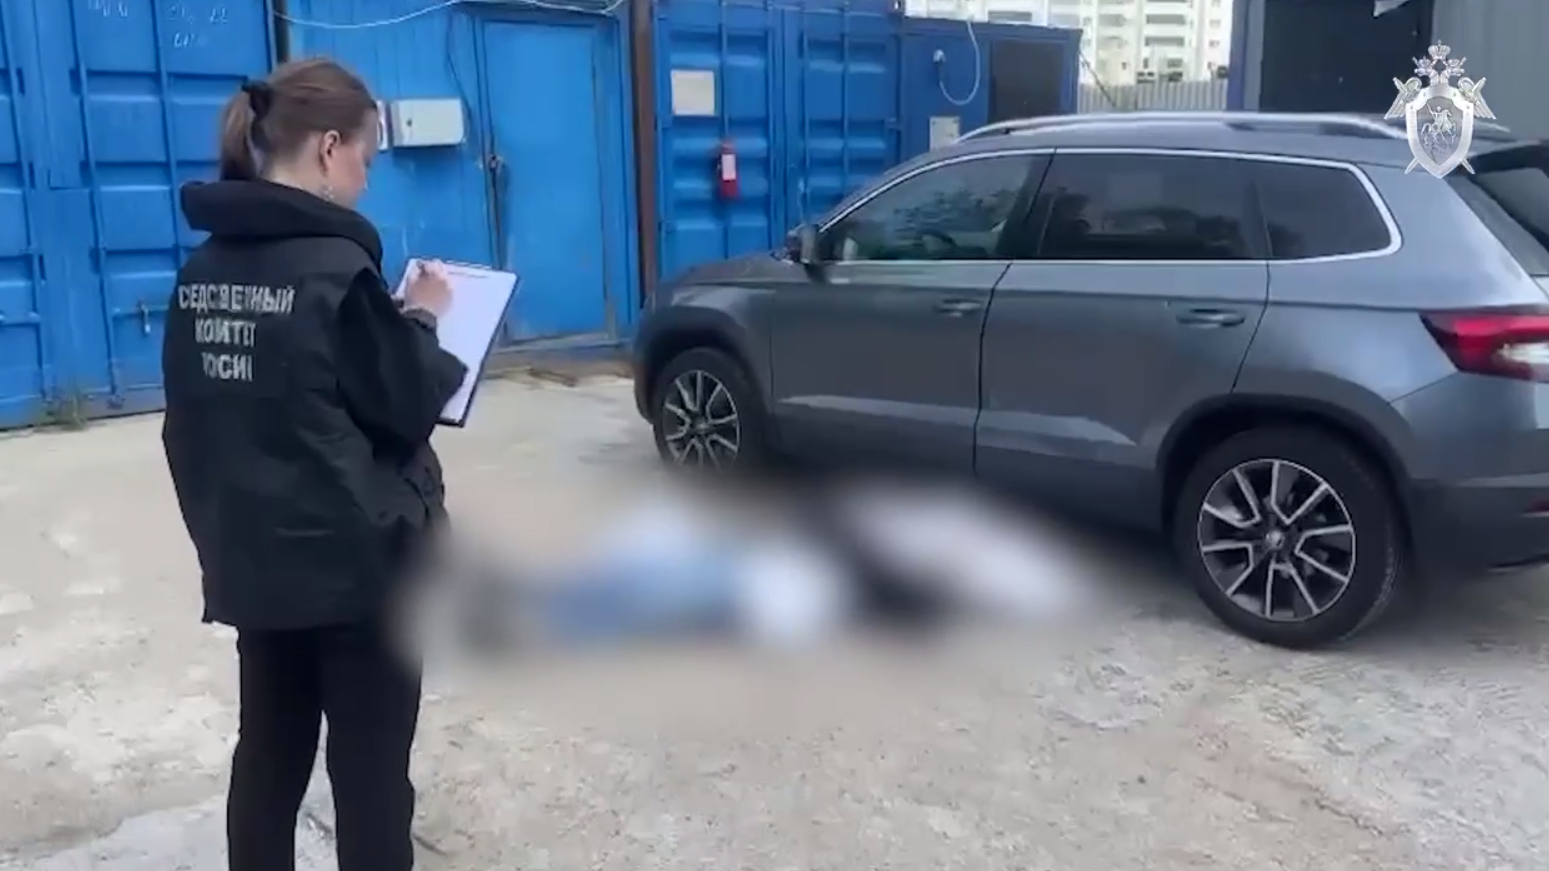 В СК поделились кадрами с места убийства гендиректора в Приморском районе